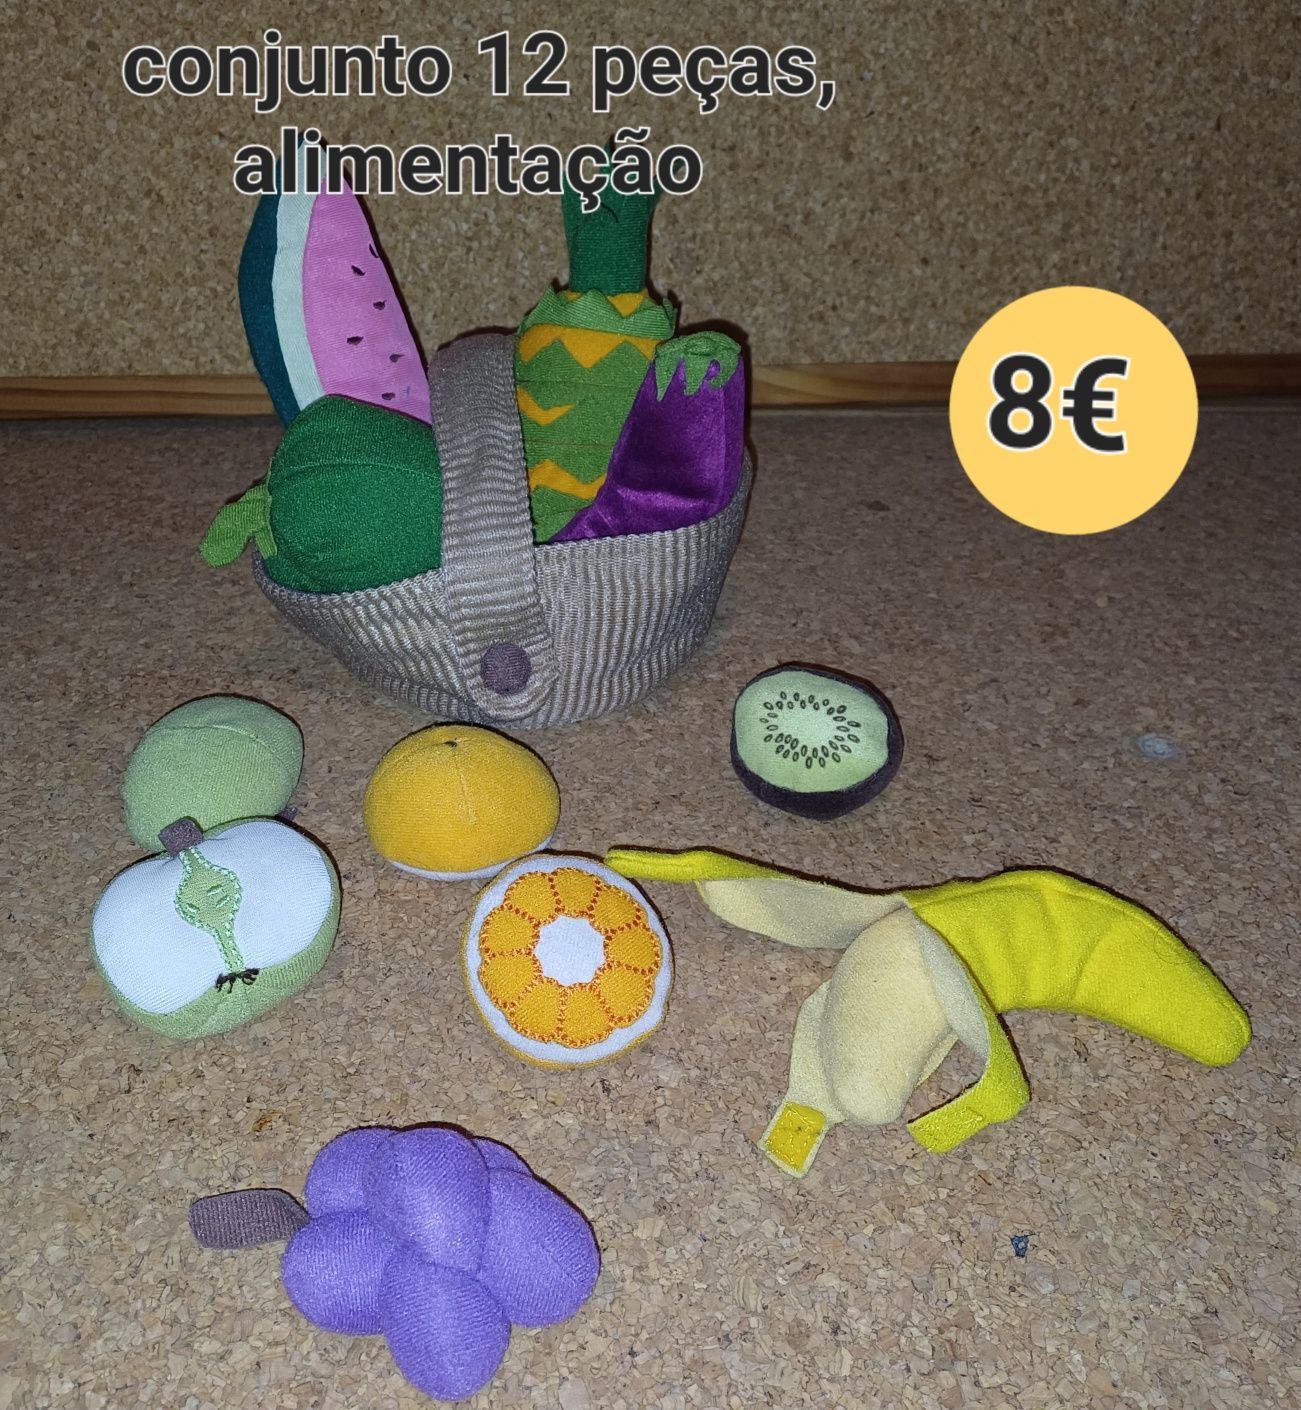 Conjunto de alimentos, criança, brinquedos, plástico, tecido, madeira